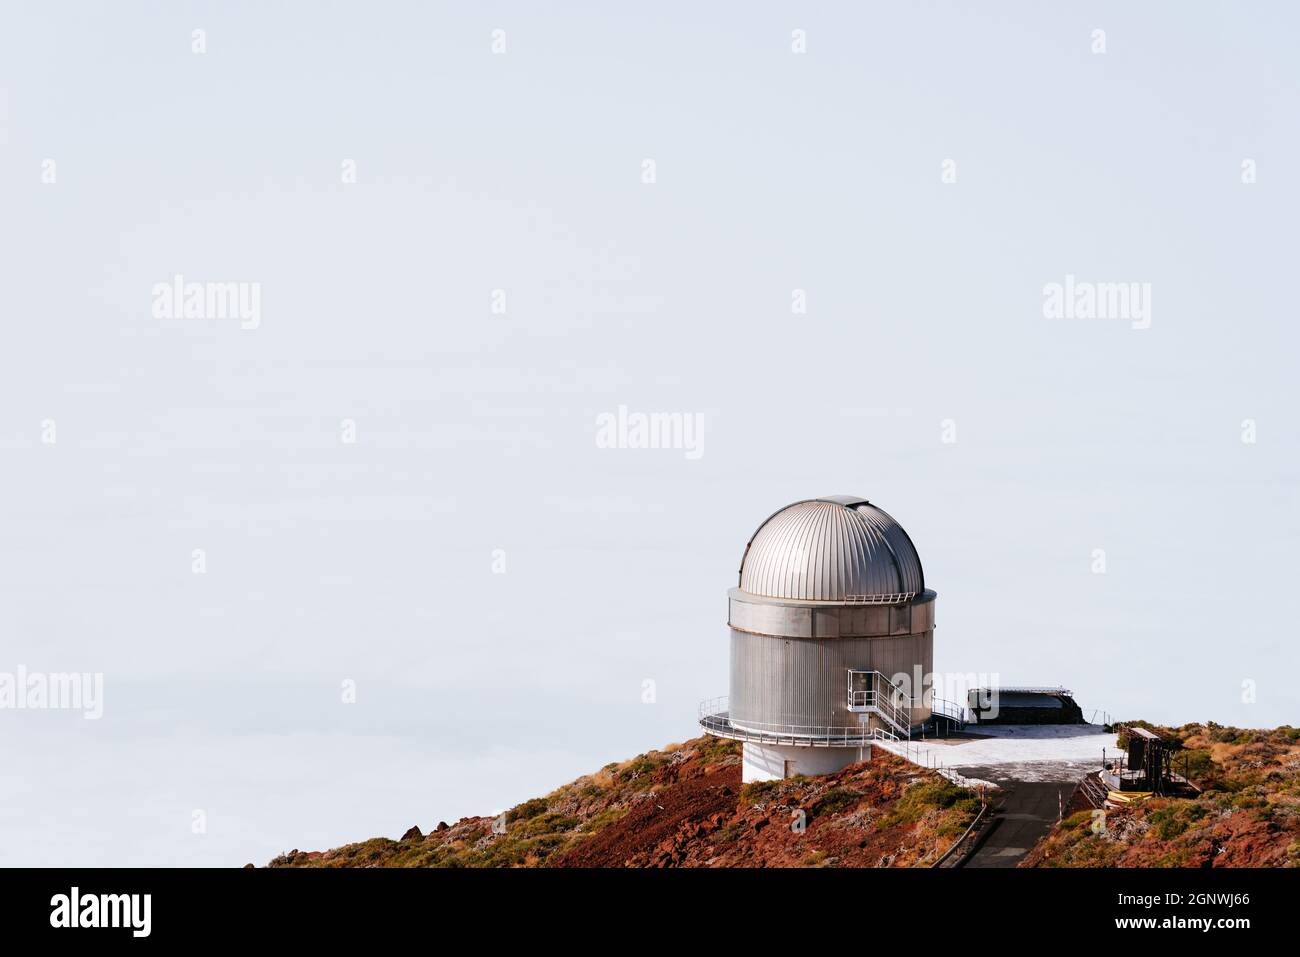 El Paso, Espagne - 14 août 2021 : Observatoire astronomique Roque de Los Muchachos, la Palma, îles Canaries. Observatoire astrophysique. Optique nordique Banque D'Images